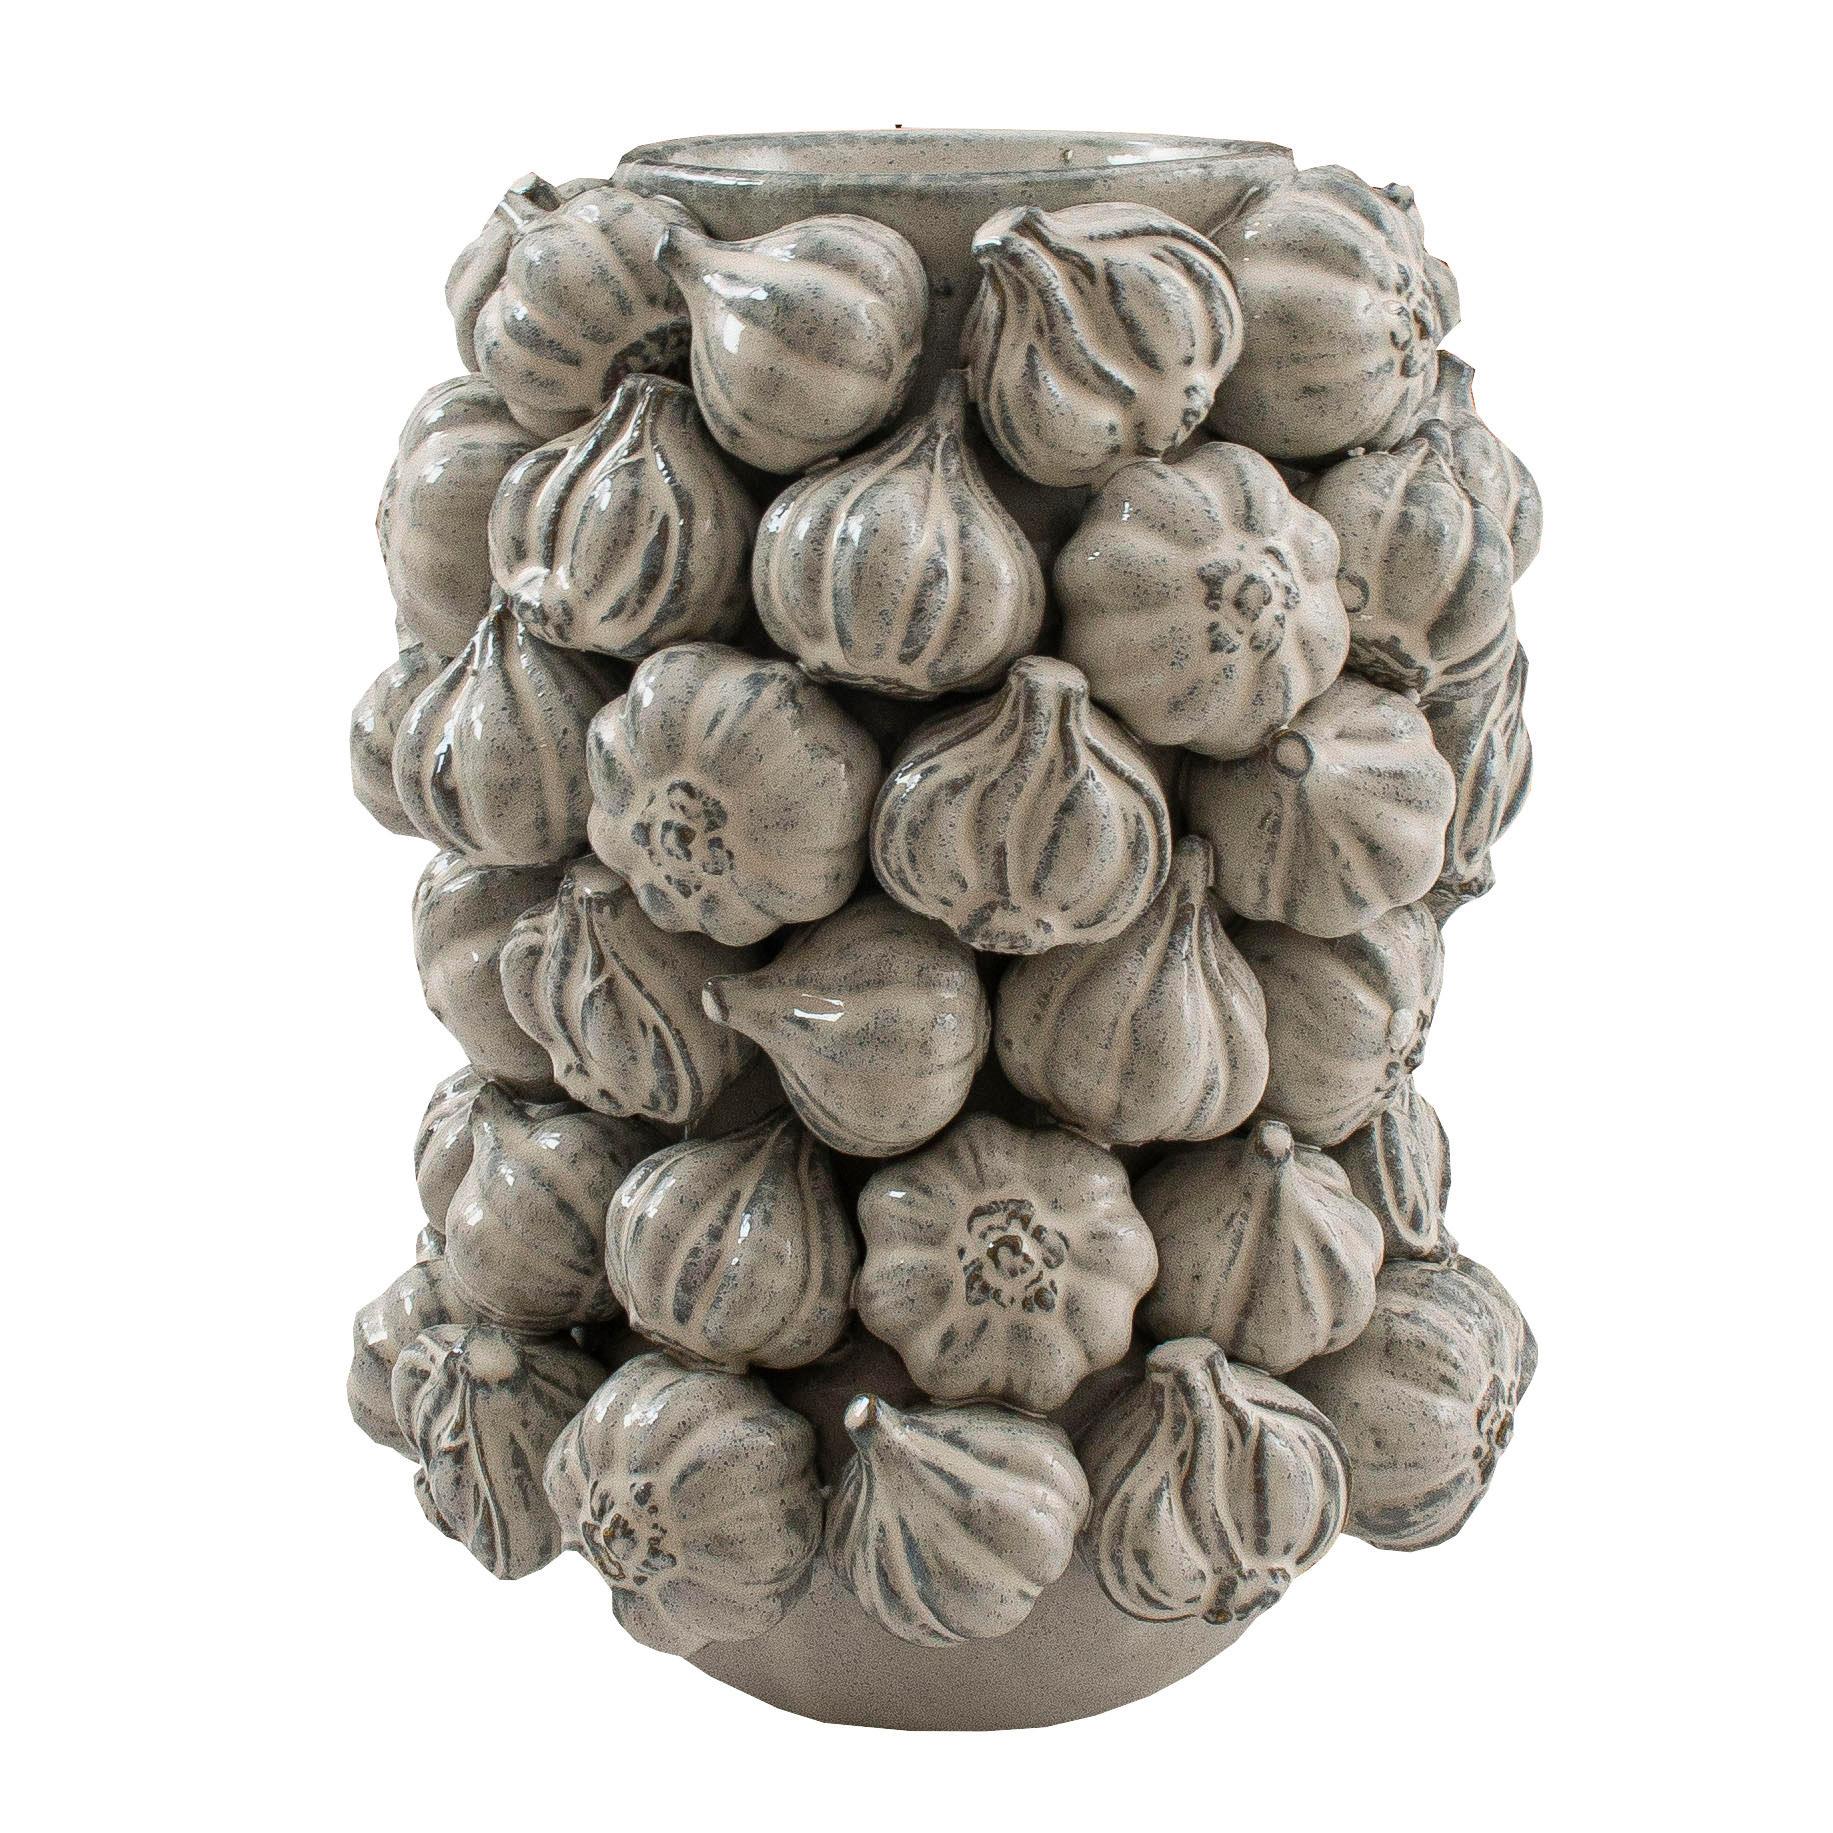 Paar Keramikvasen „Garlic“
Interessantes Paar Keramikvasen in Form von Knoblauch, sie sind handgefertigt. Die Vase enthält Knoblauchzwiebeln, die fast echt aussehen. Die Vase ist wasserdicht und eignet sich sowohl für echte als auch für